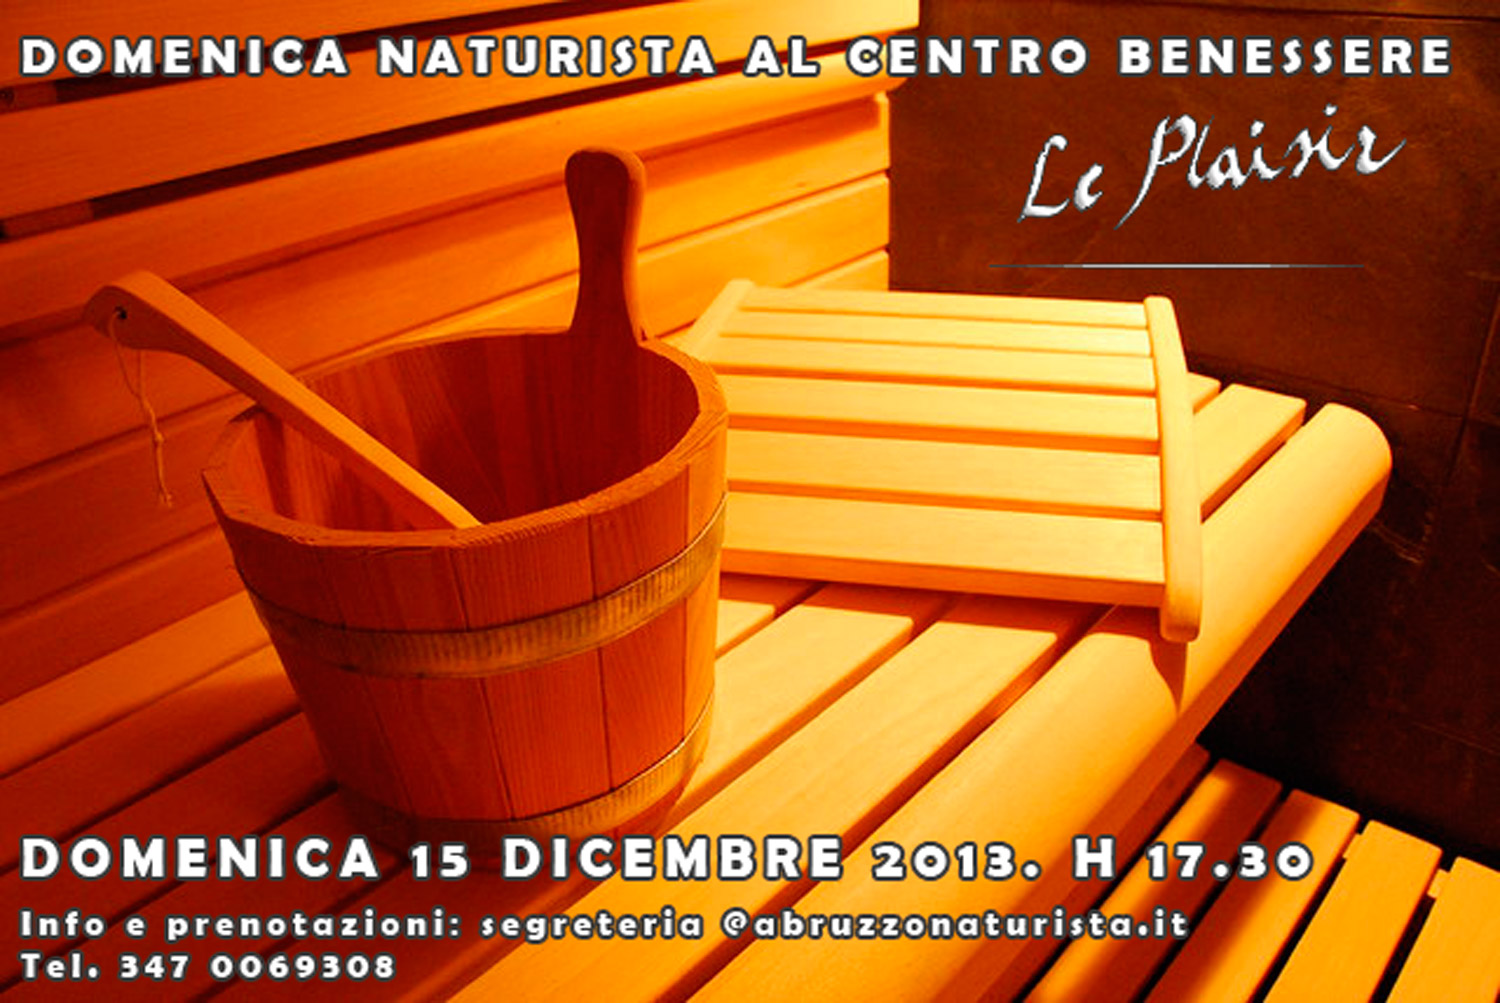 Domenica Naturista al centro benessere “Le Plaisir” di Pescara – 15 dicembre 2013